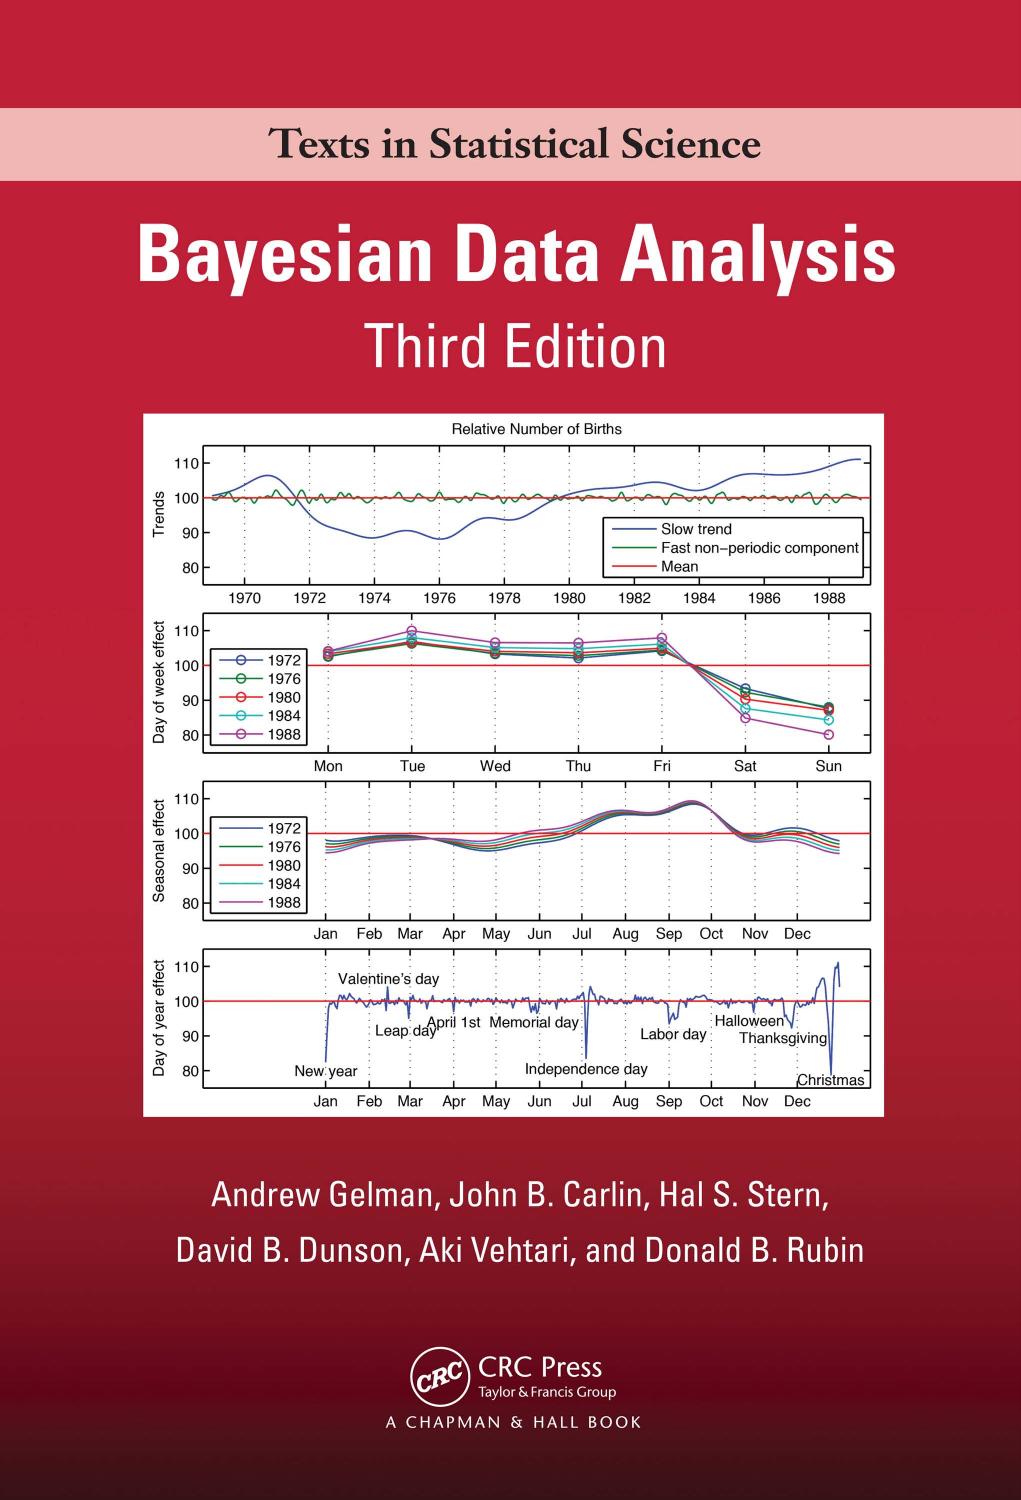 Bayesian Data Analysis, Third Edition